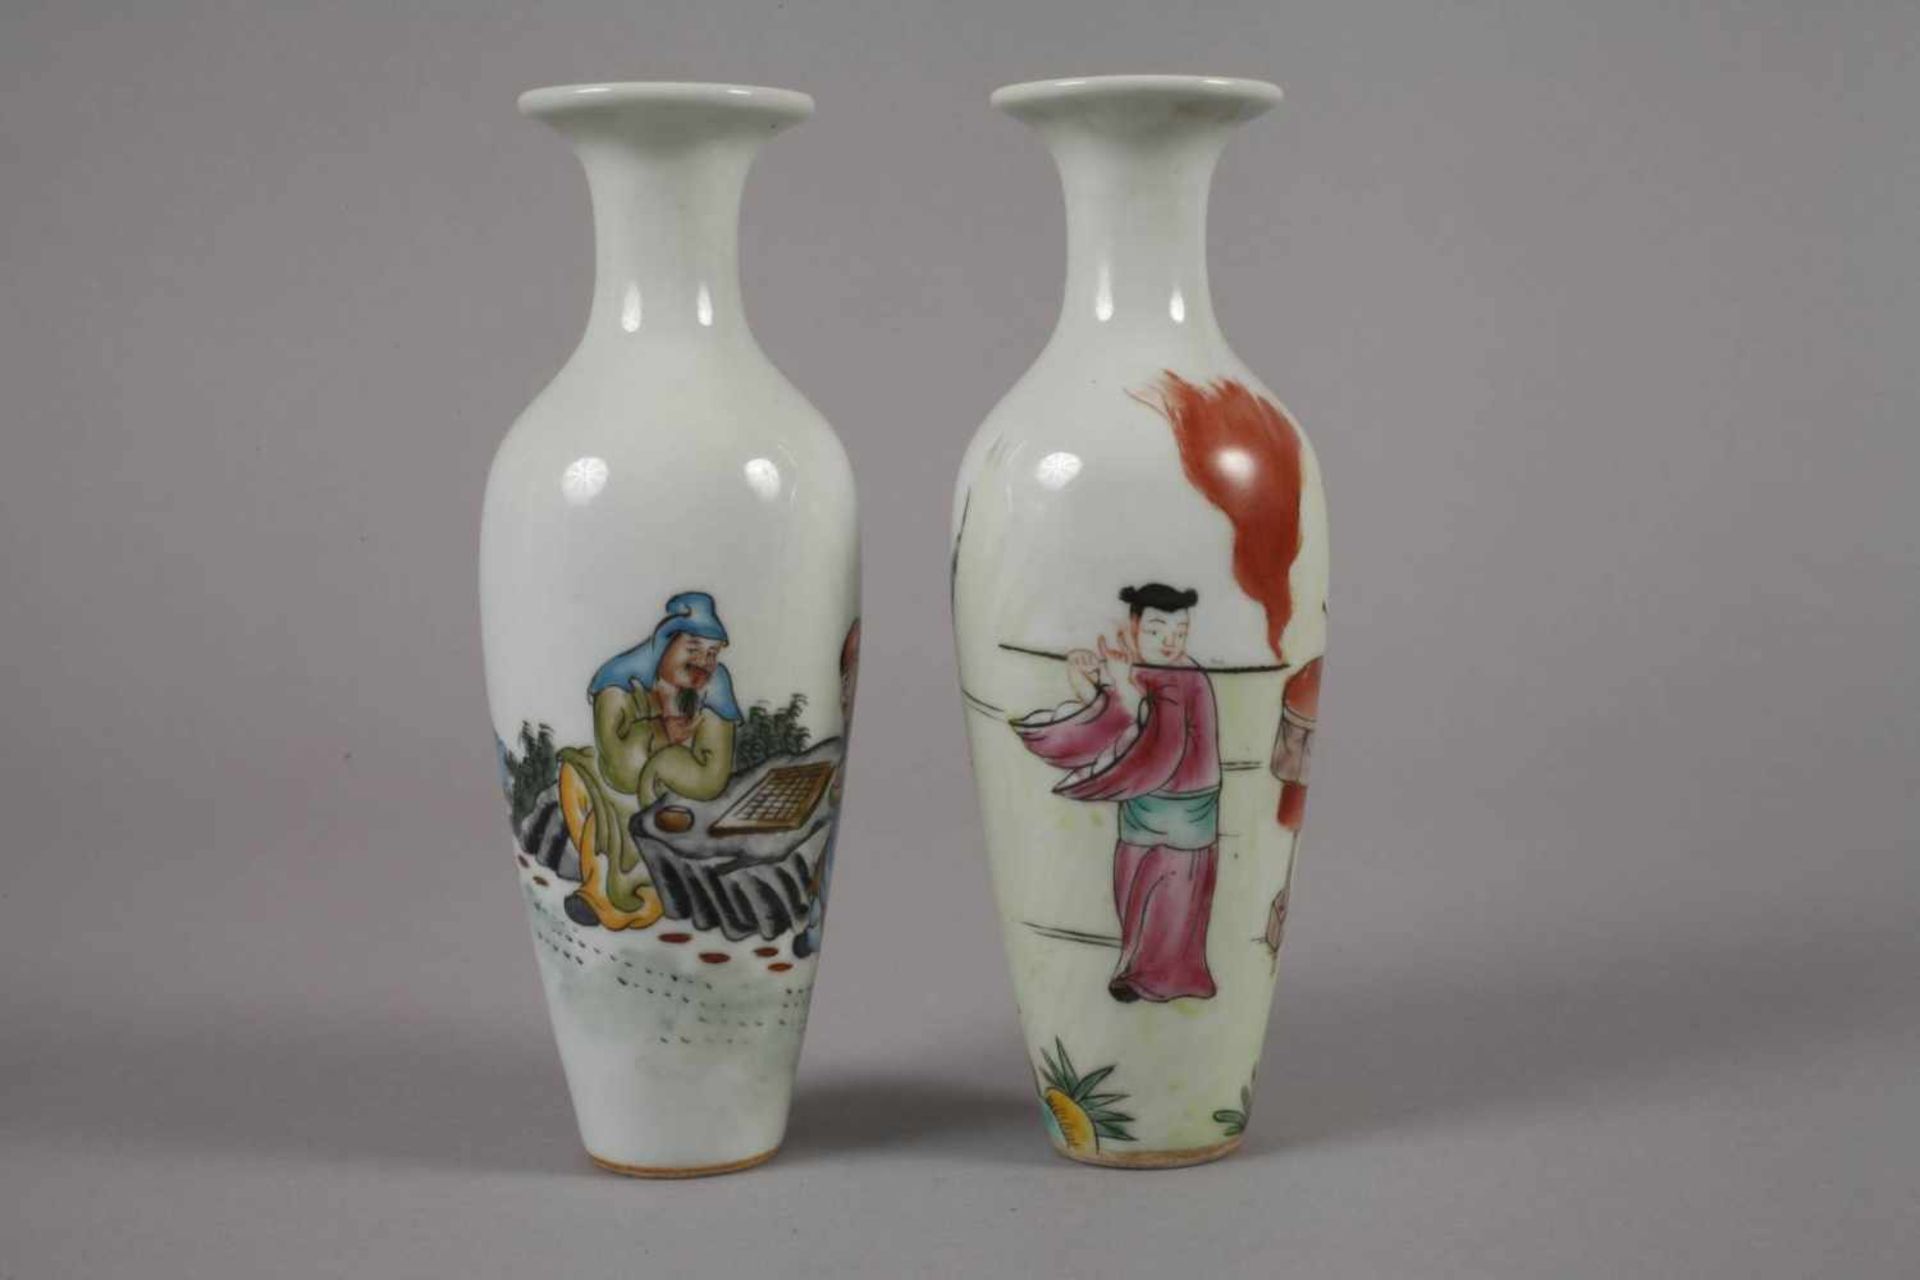 Sechs Vasen China1960er bis 1970er Jahre, gemarkt und signiert, Weißporzellan in polychromer - Bild 7 aus 12